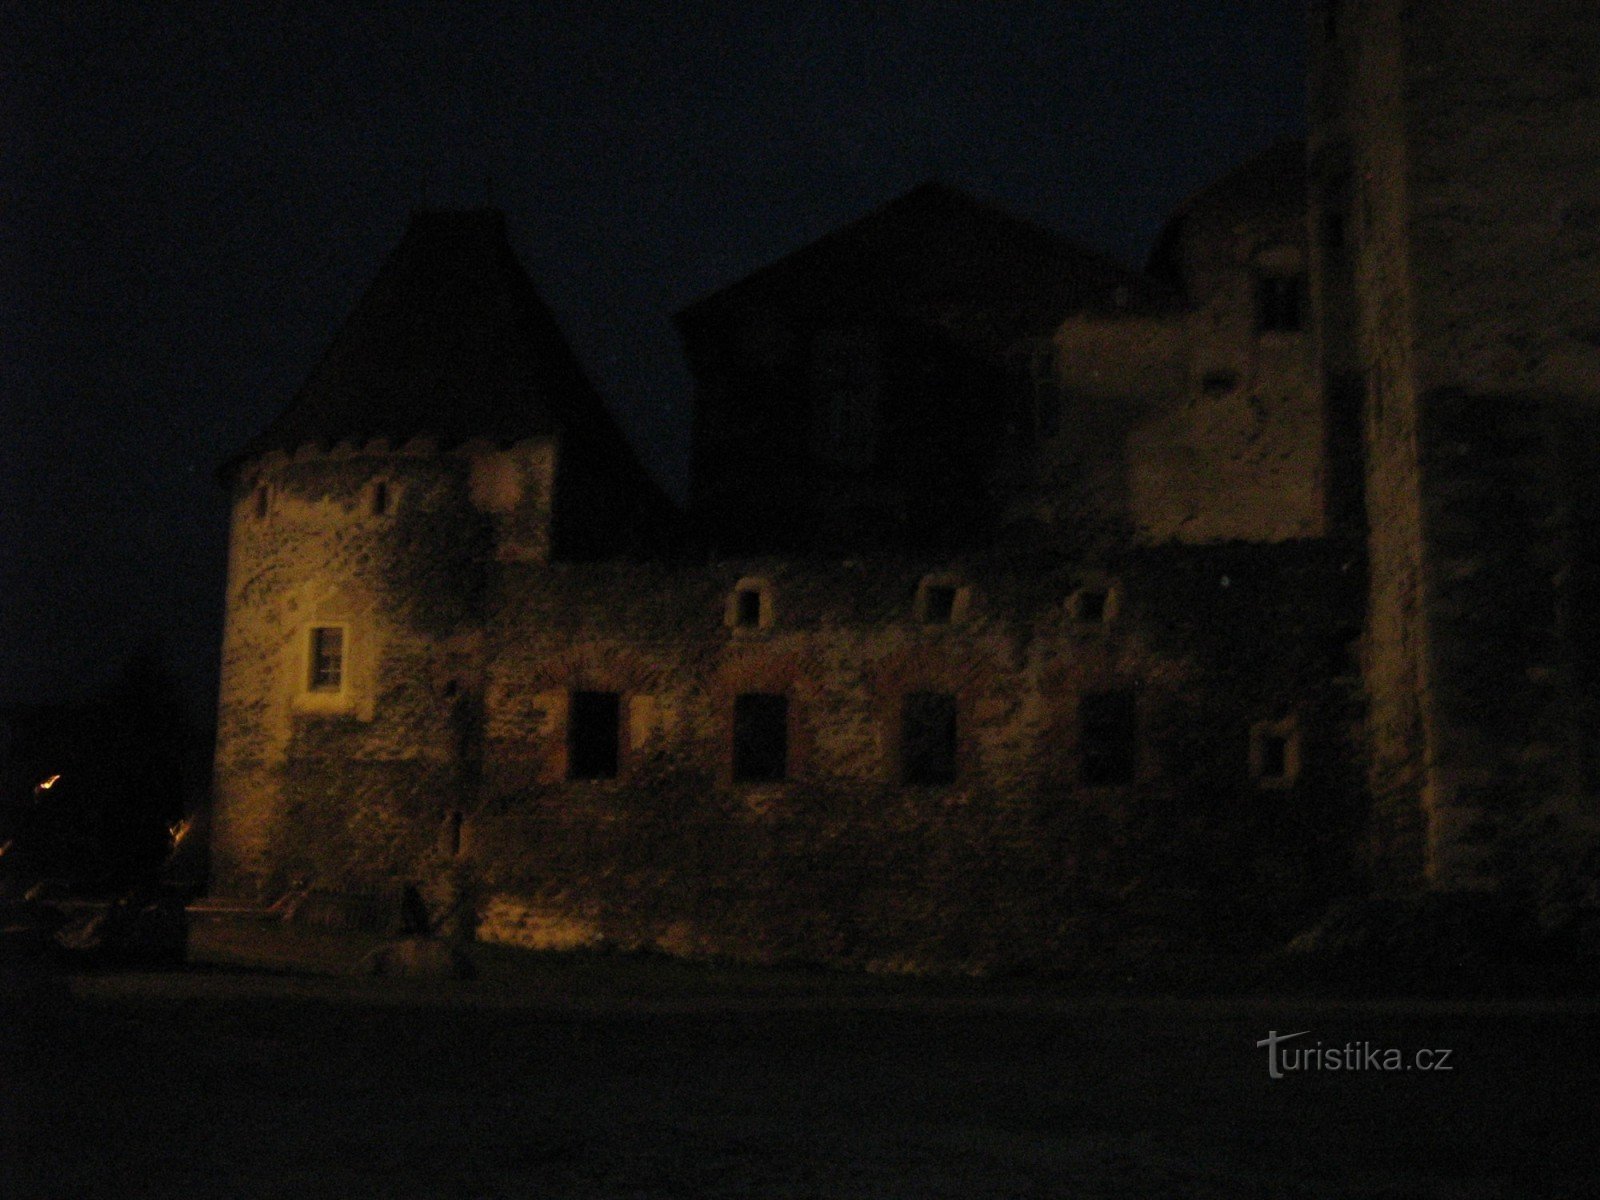 Νυχτερινό υδάτινο κάστρο Švihov